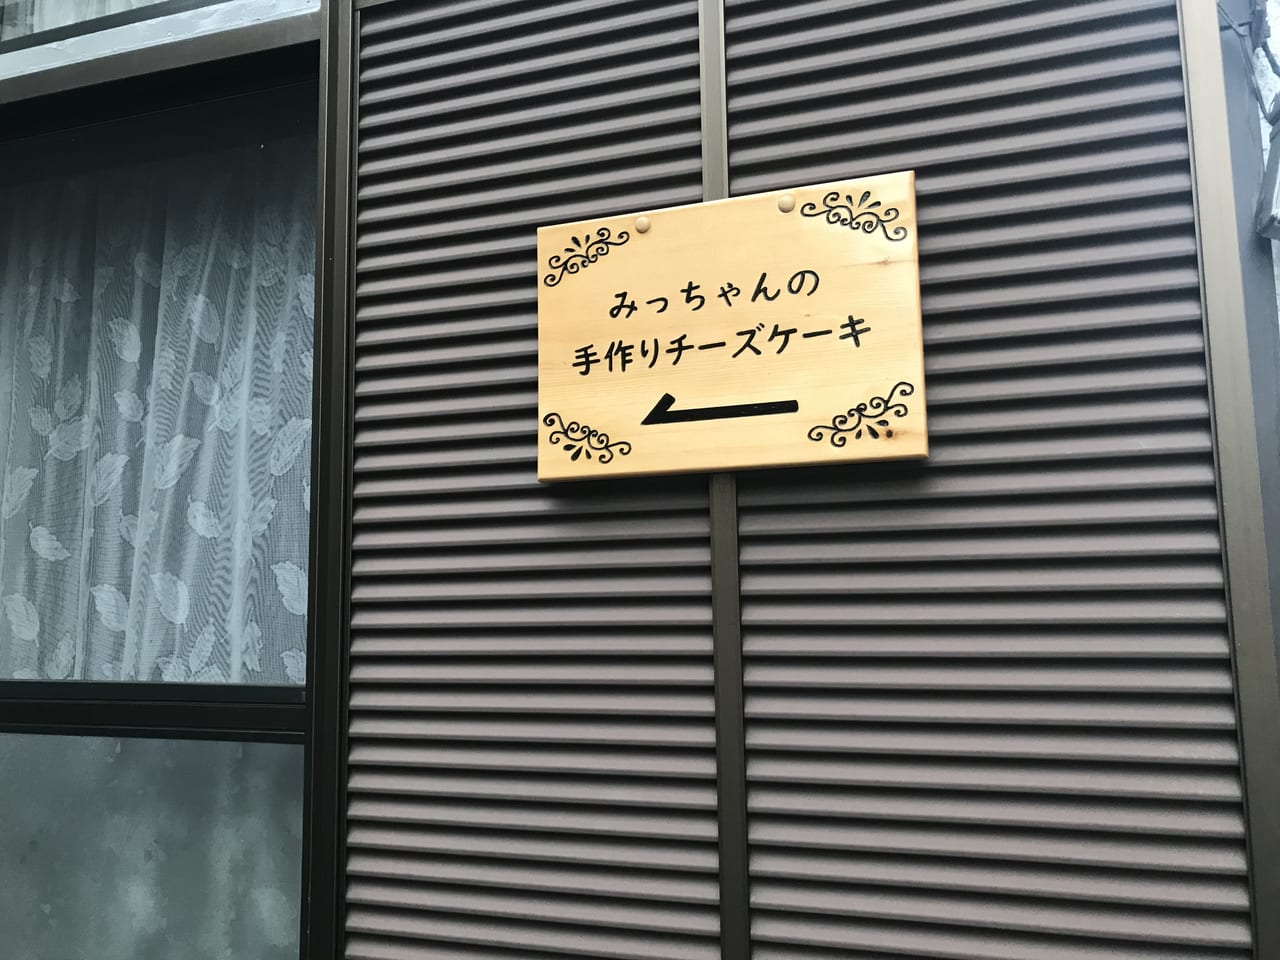 横須賀市 佐原交差点で発見 一軒家の隠れ家チーズケーキ店 みっちゃんのチーズケーキ をご紹介します 号外net 横須賀市 三浦市